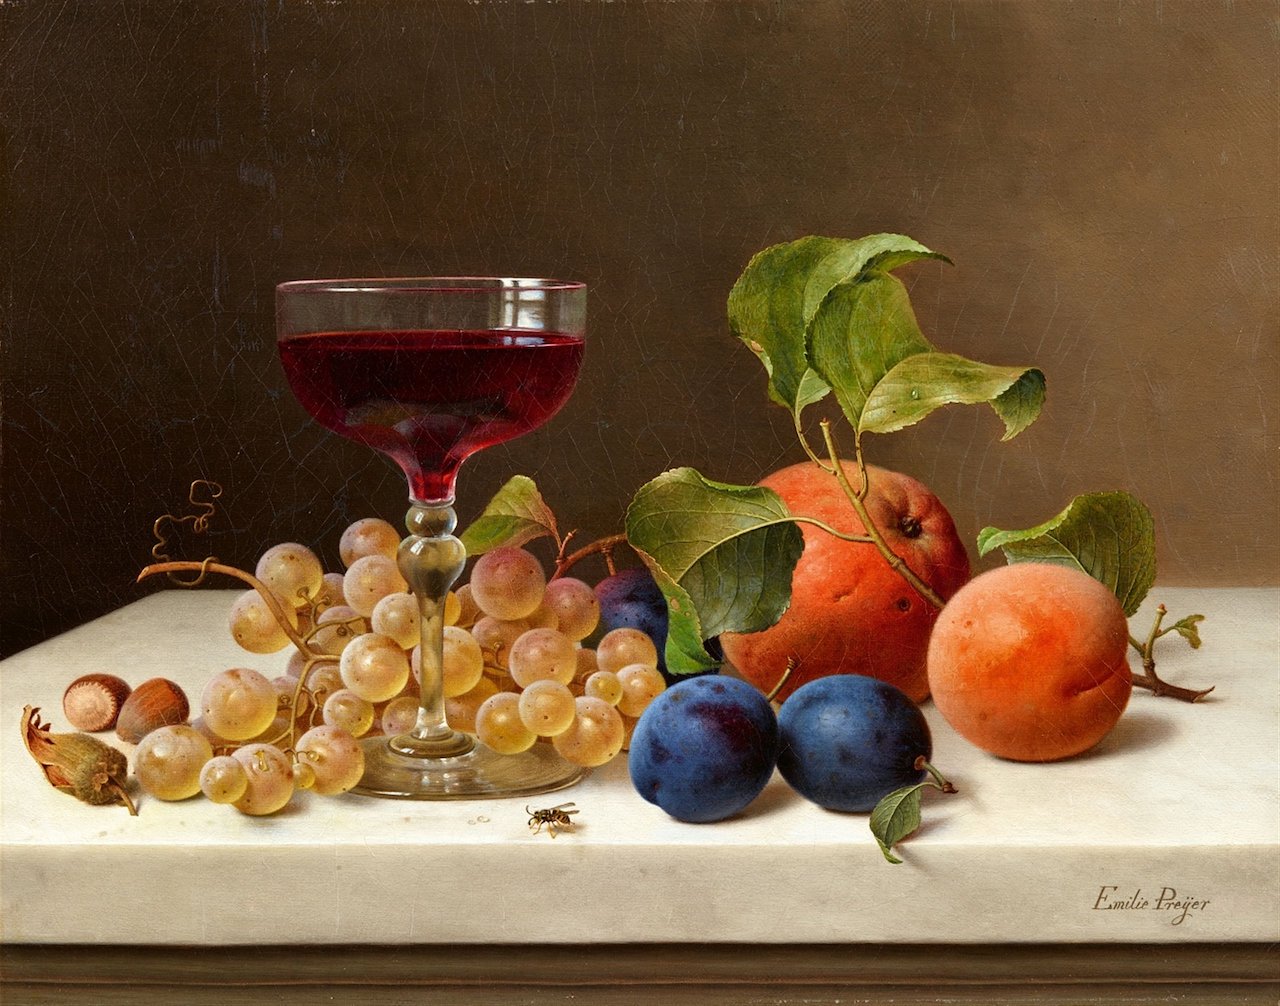 Emilie Preyer. Stillleben mit Früchten, Nüssen und Wein.vor 1930. Öl / Leinwand. 28 x 35,5cm